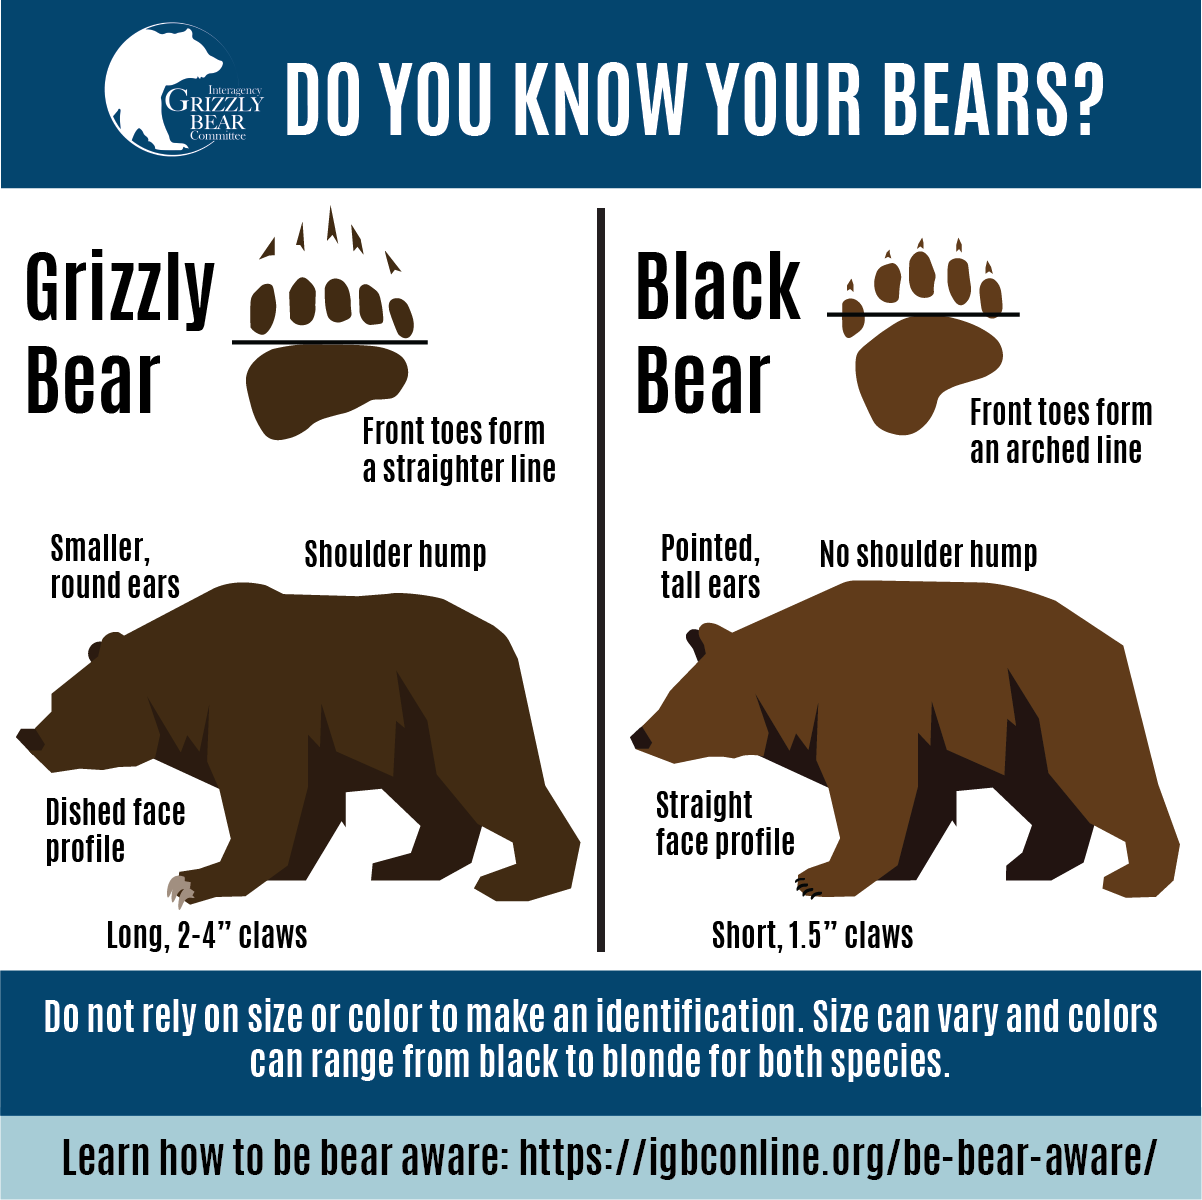 grizzly bear tracks vs black bear